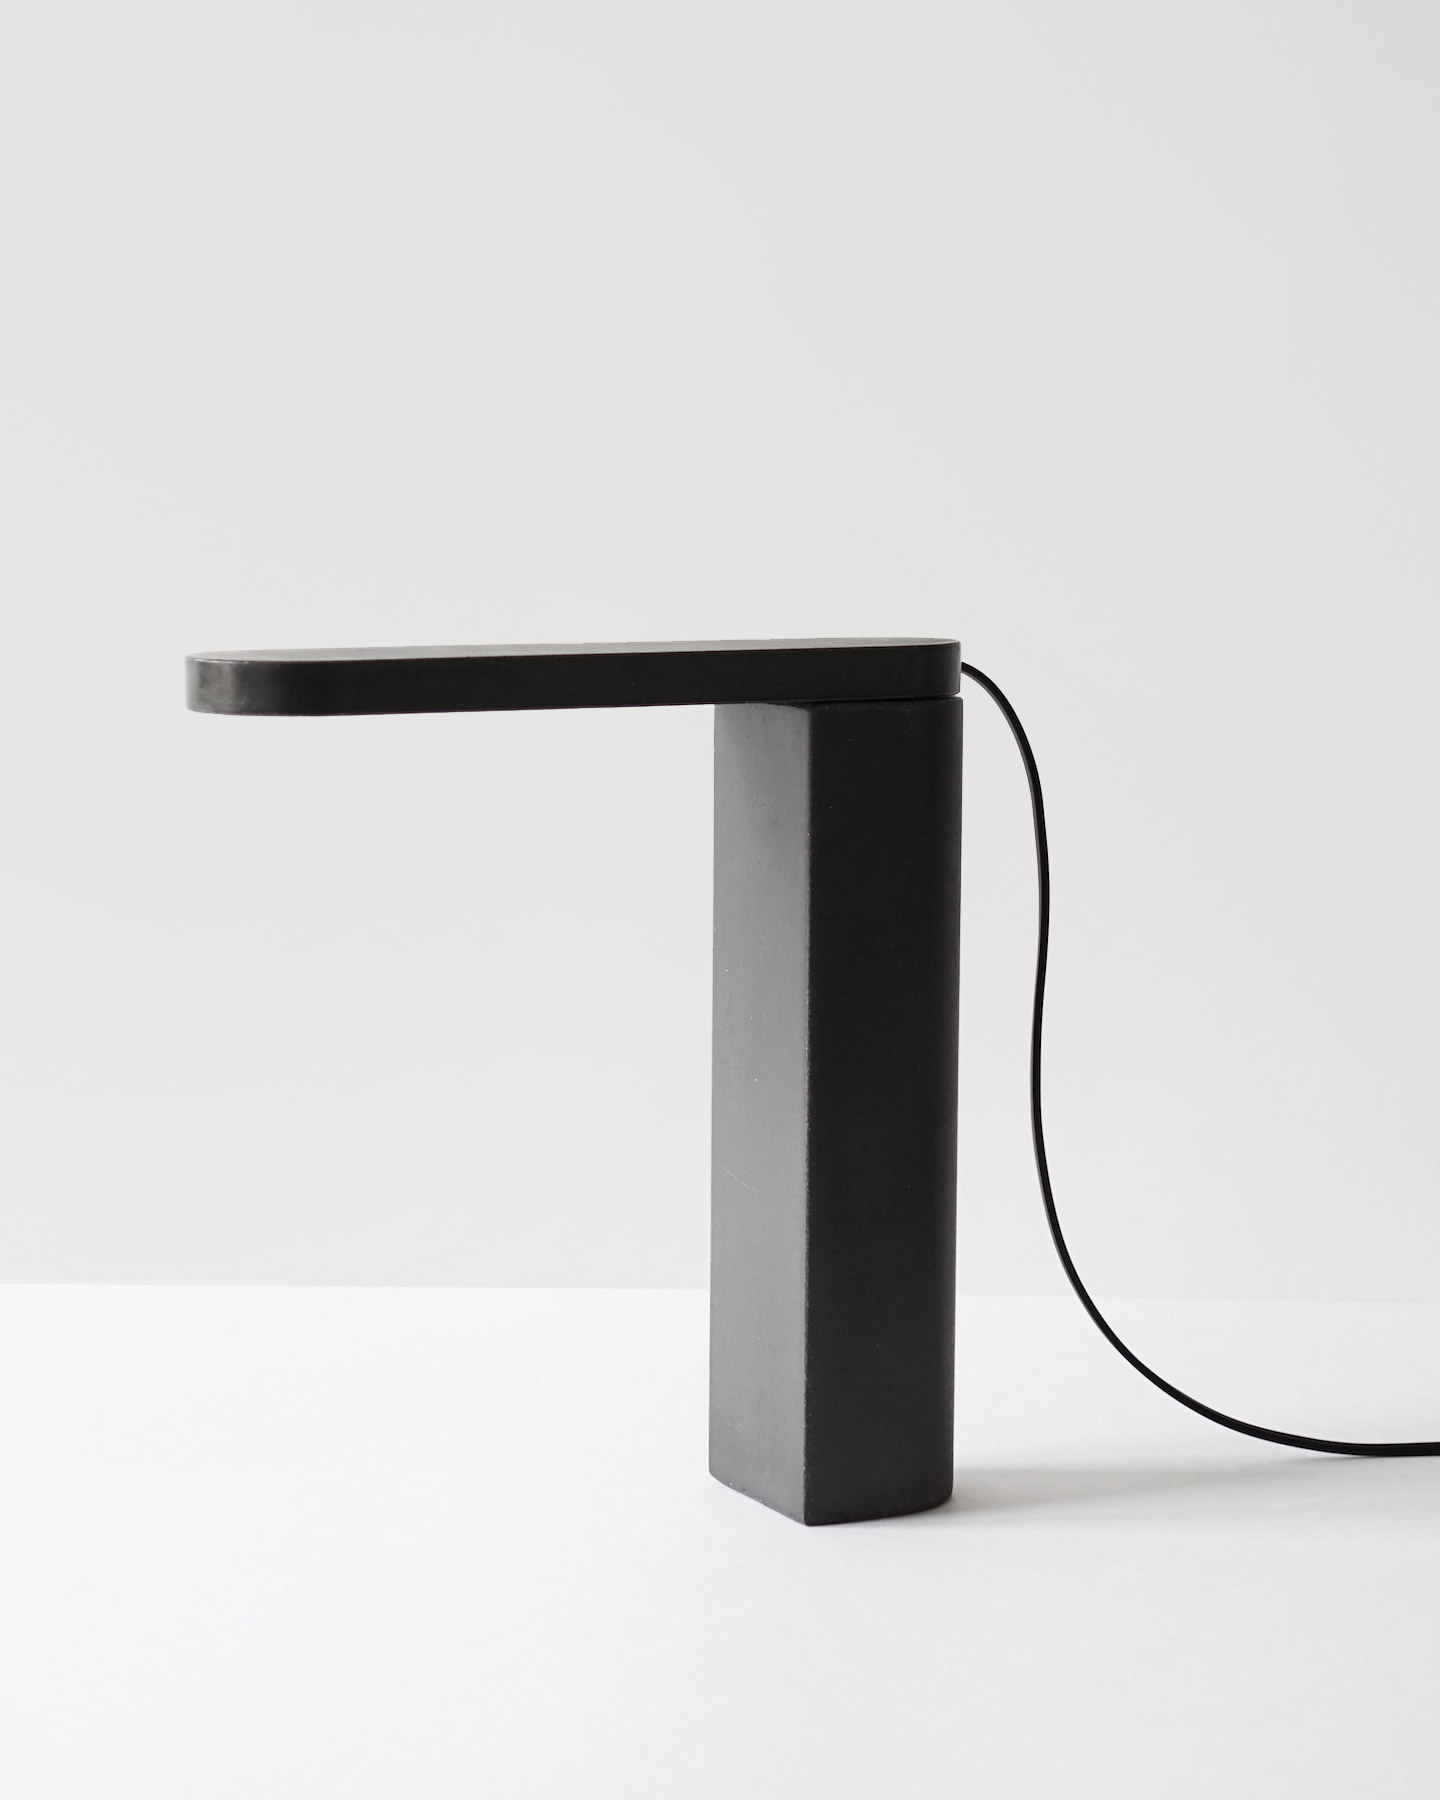 Minimalist Table Lamp "Möja" by Leonard Kadid